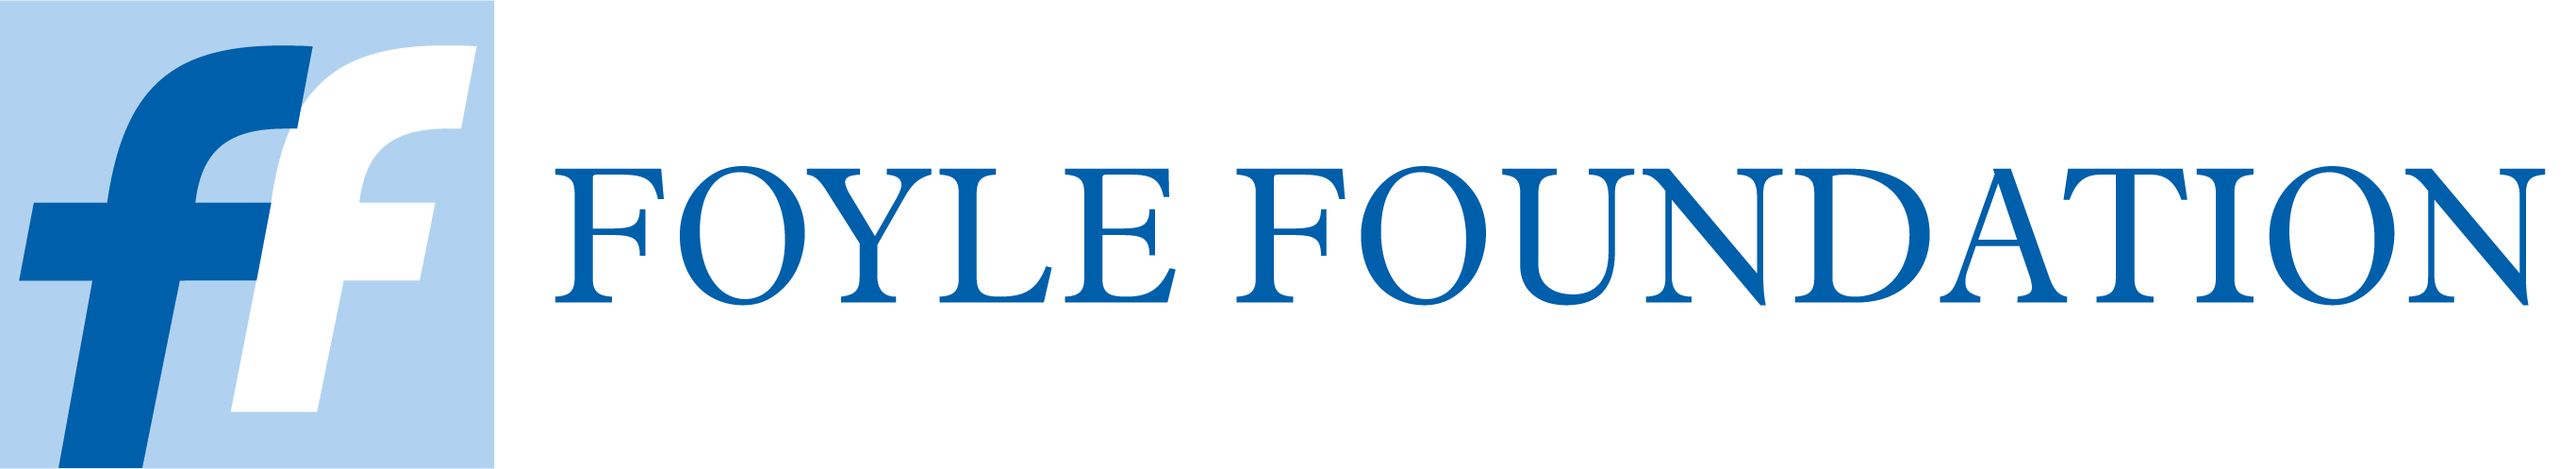 Foyle-Foundation-logo